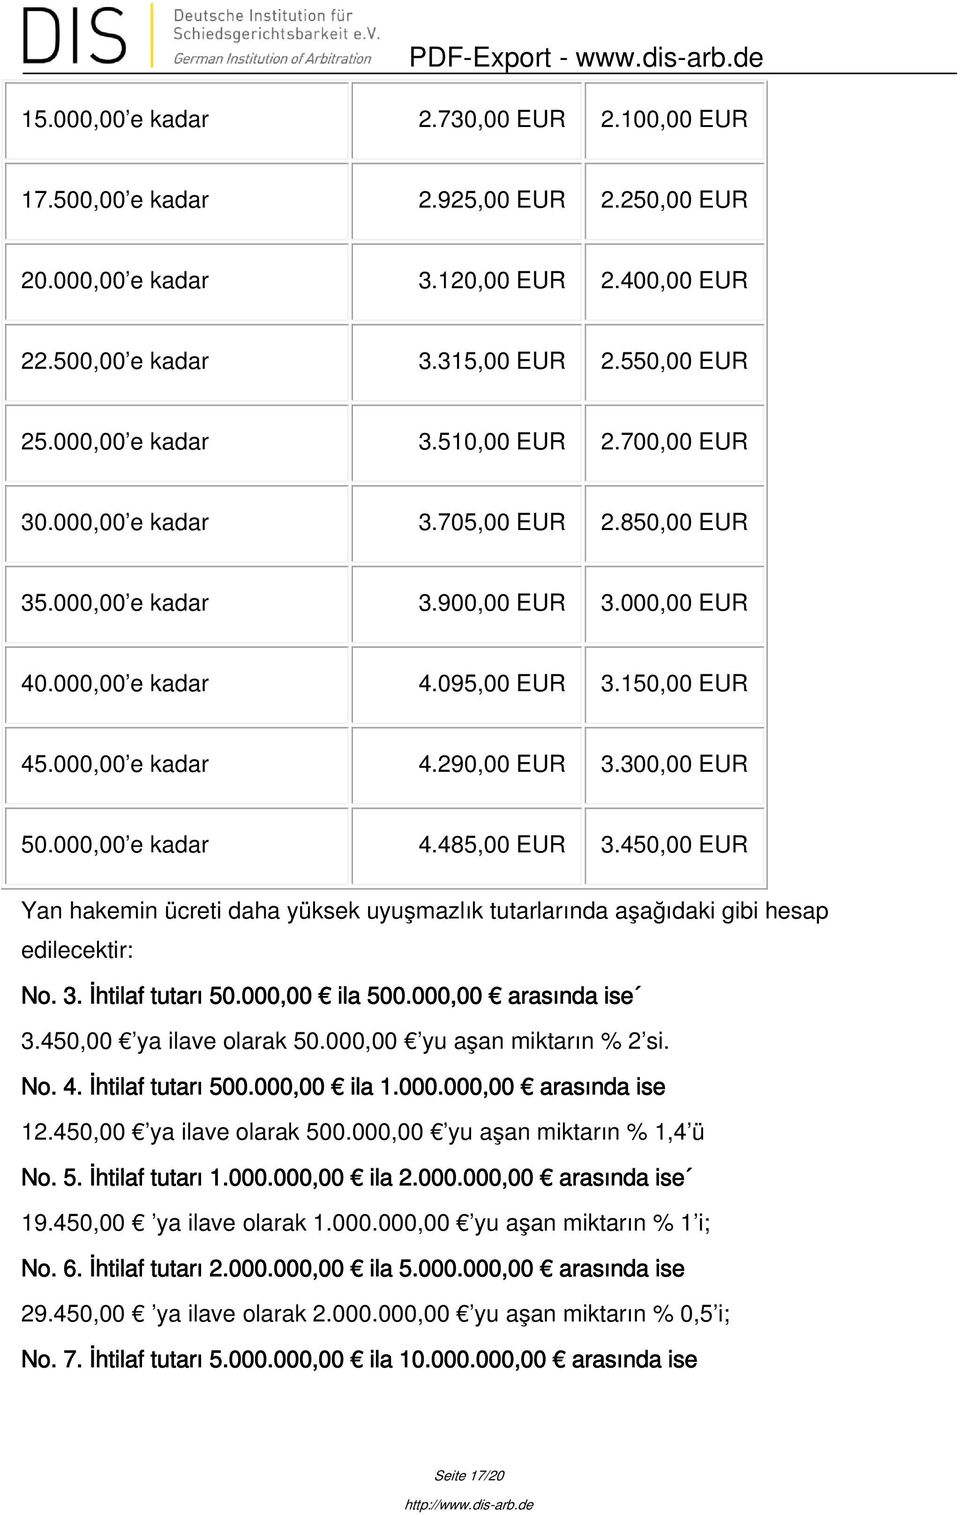 000,00 e kadar 4.485,00 EUR 3.450,00 EUR Yan hakemin ücreti daha yüksek uyuşmazlık tutarlarında aşağıdaki gibi hesap edilecektir: No. 3. İhtilaf tutarı 50.000,00 ila 500.000,00 arasında ise 3.